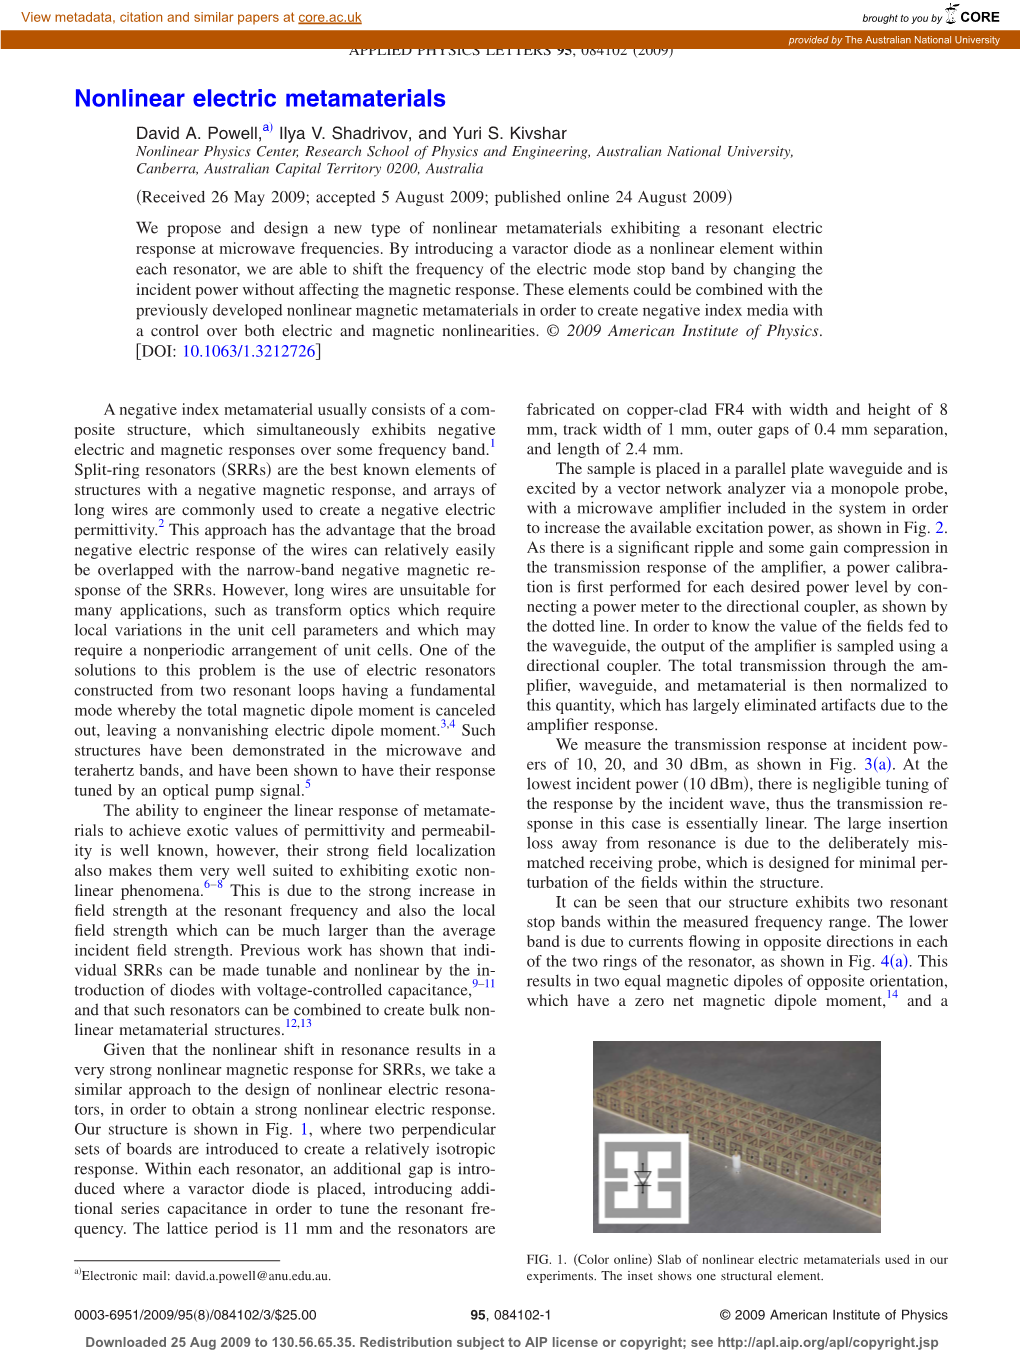 Nonlinear Electric Metamaterials ͒ David A